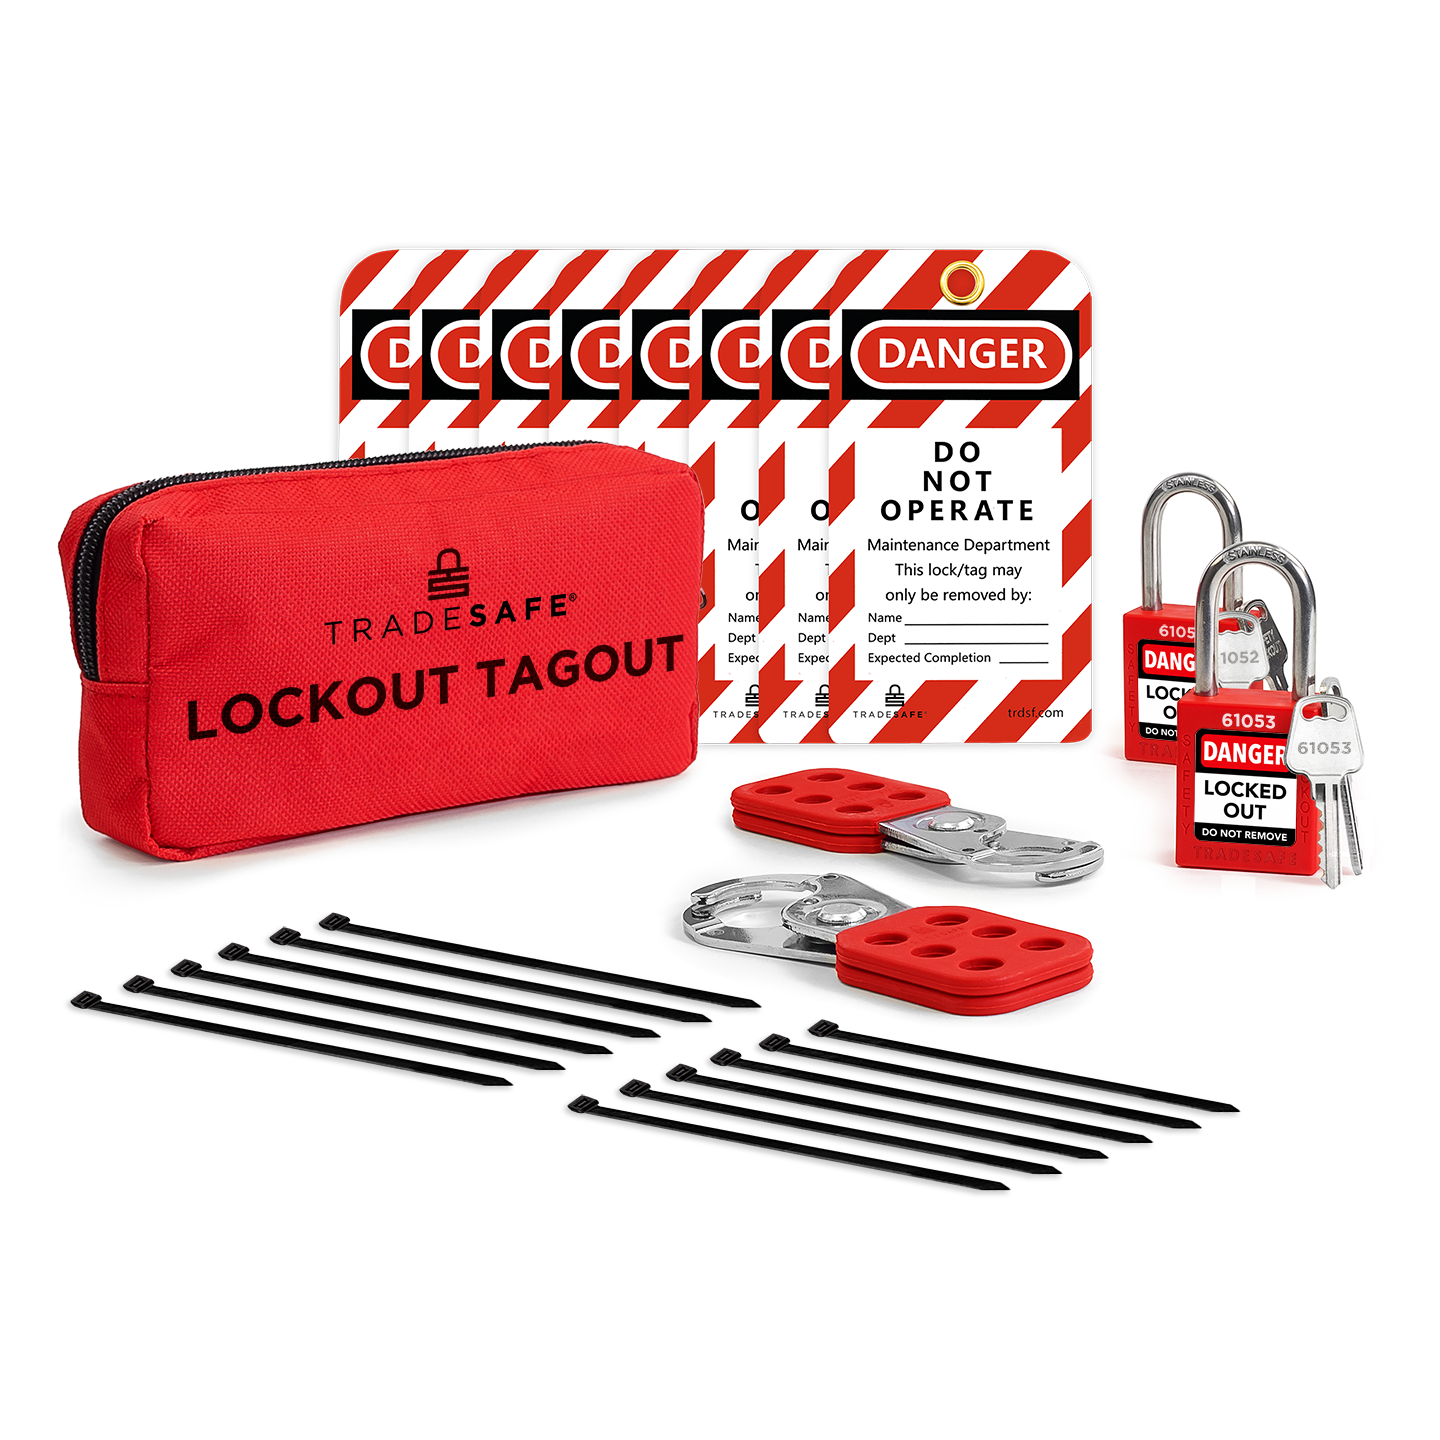 Personal Lockout Tagout Kit – 2 Keys Per Lock